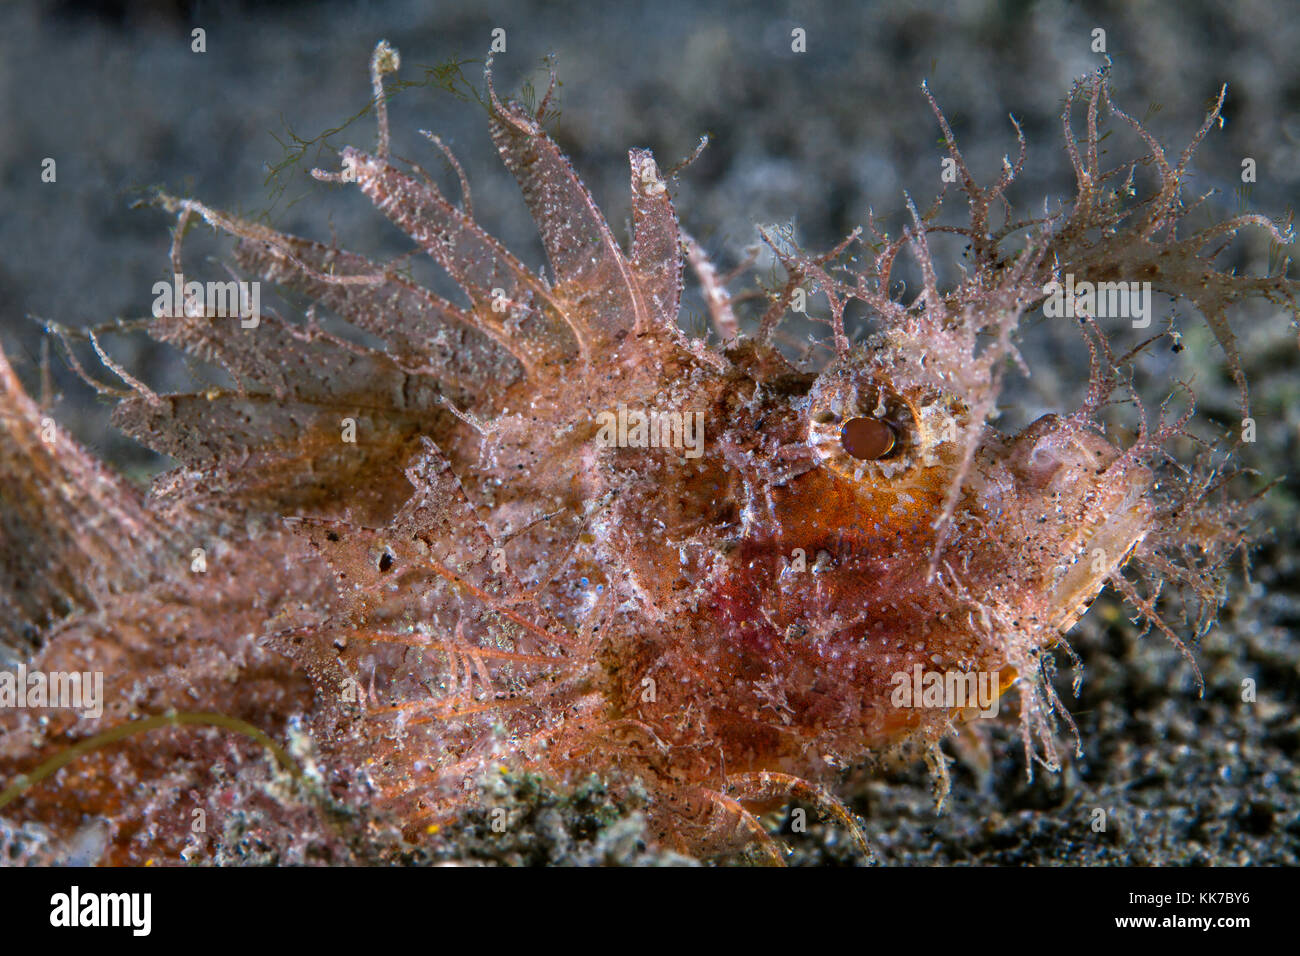 Schließen Sie herauf Bild von einem jugendlichen Ambon scorpionfish (Pteroidichthys amboinensis) auf dem Meeresboden. Lembeh Straits, Indonesien. Stockfoto